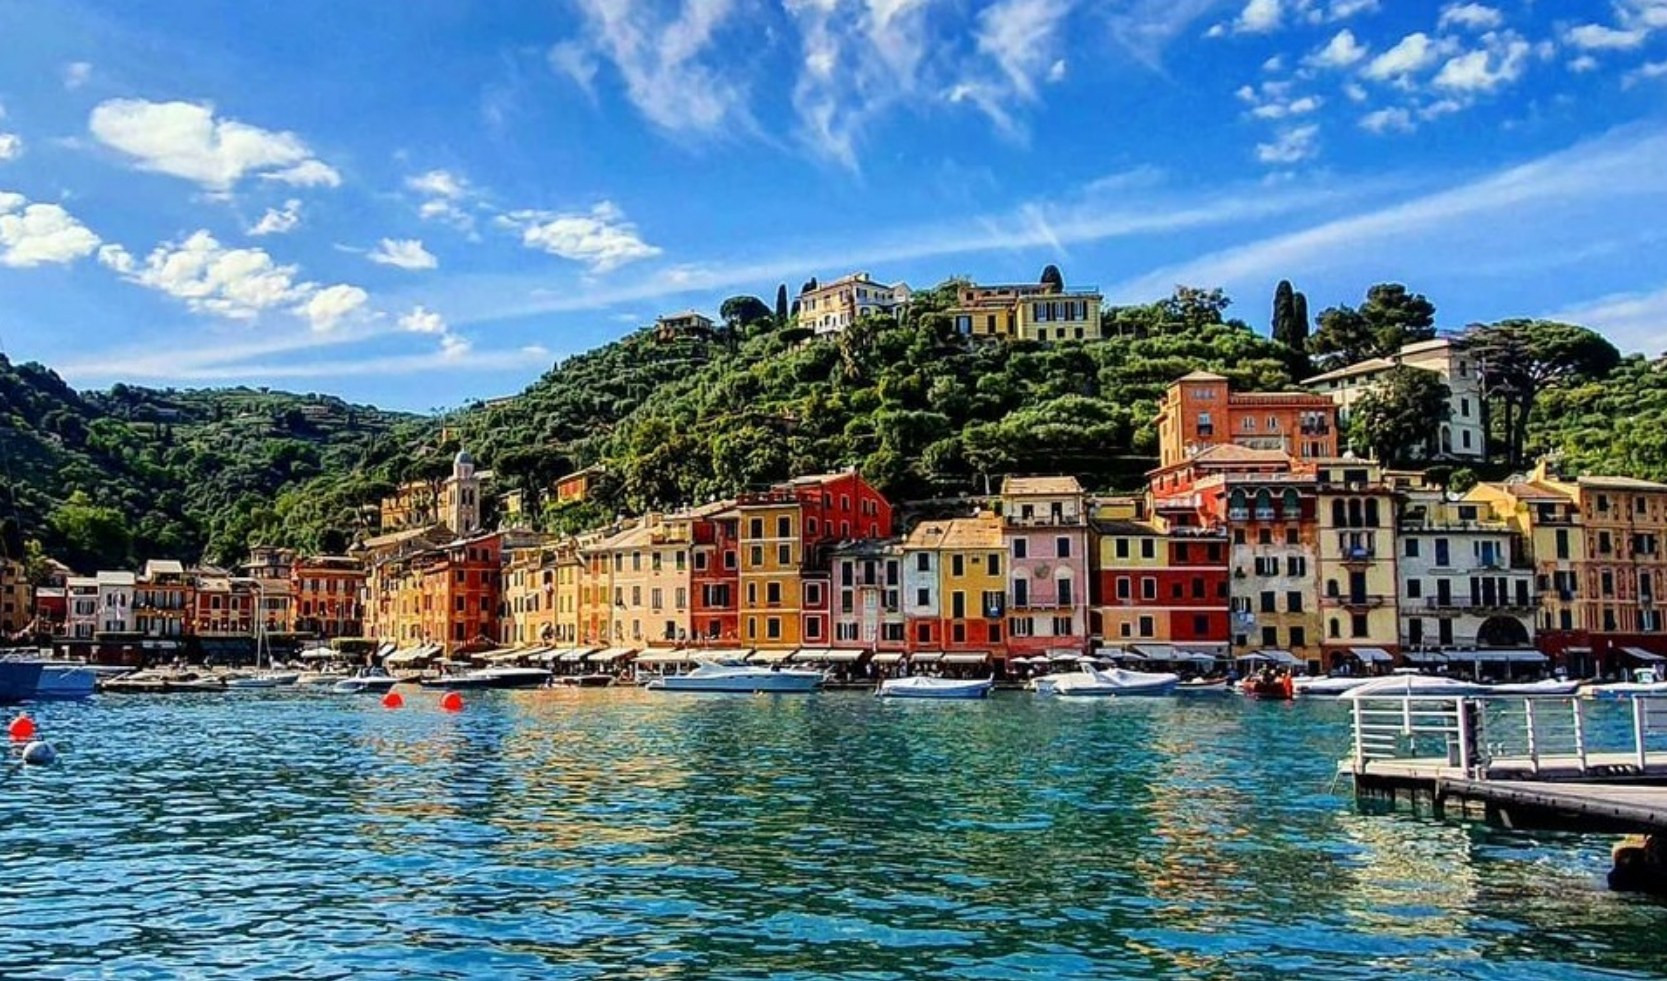 Stranieri che cercano casa in Italia, nella top 10 c'è Portofino